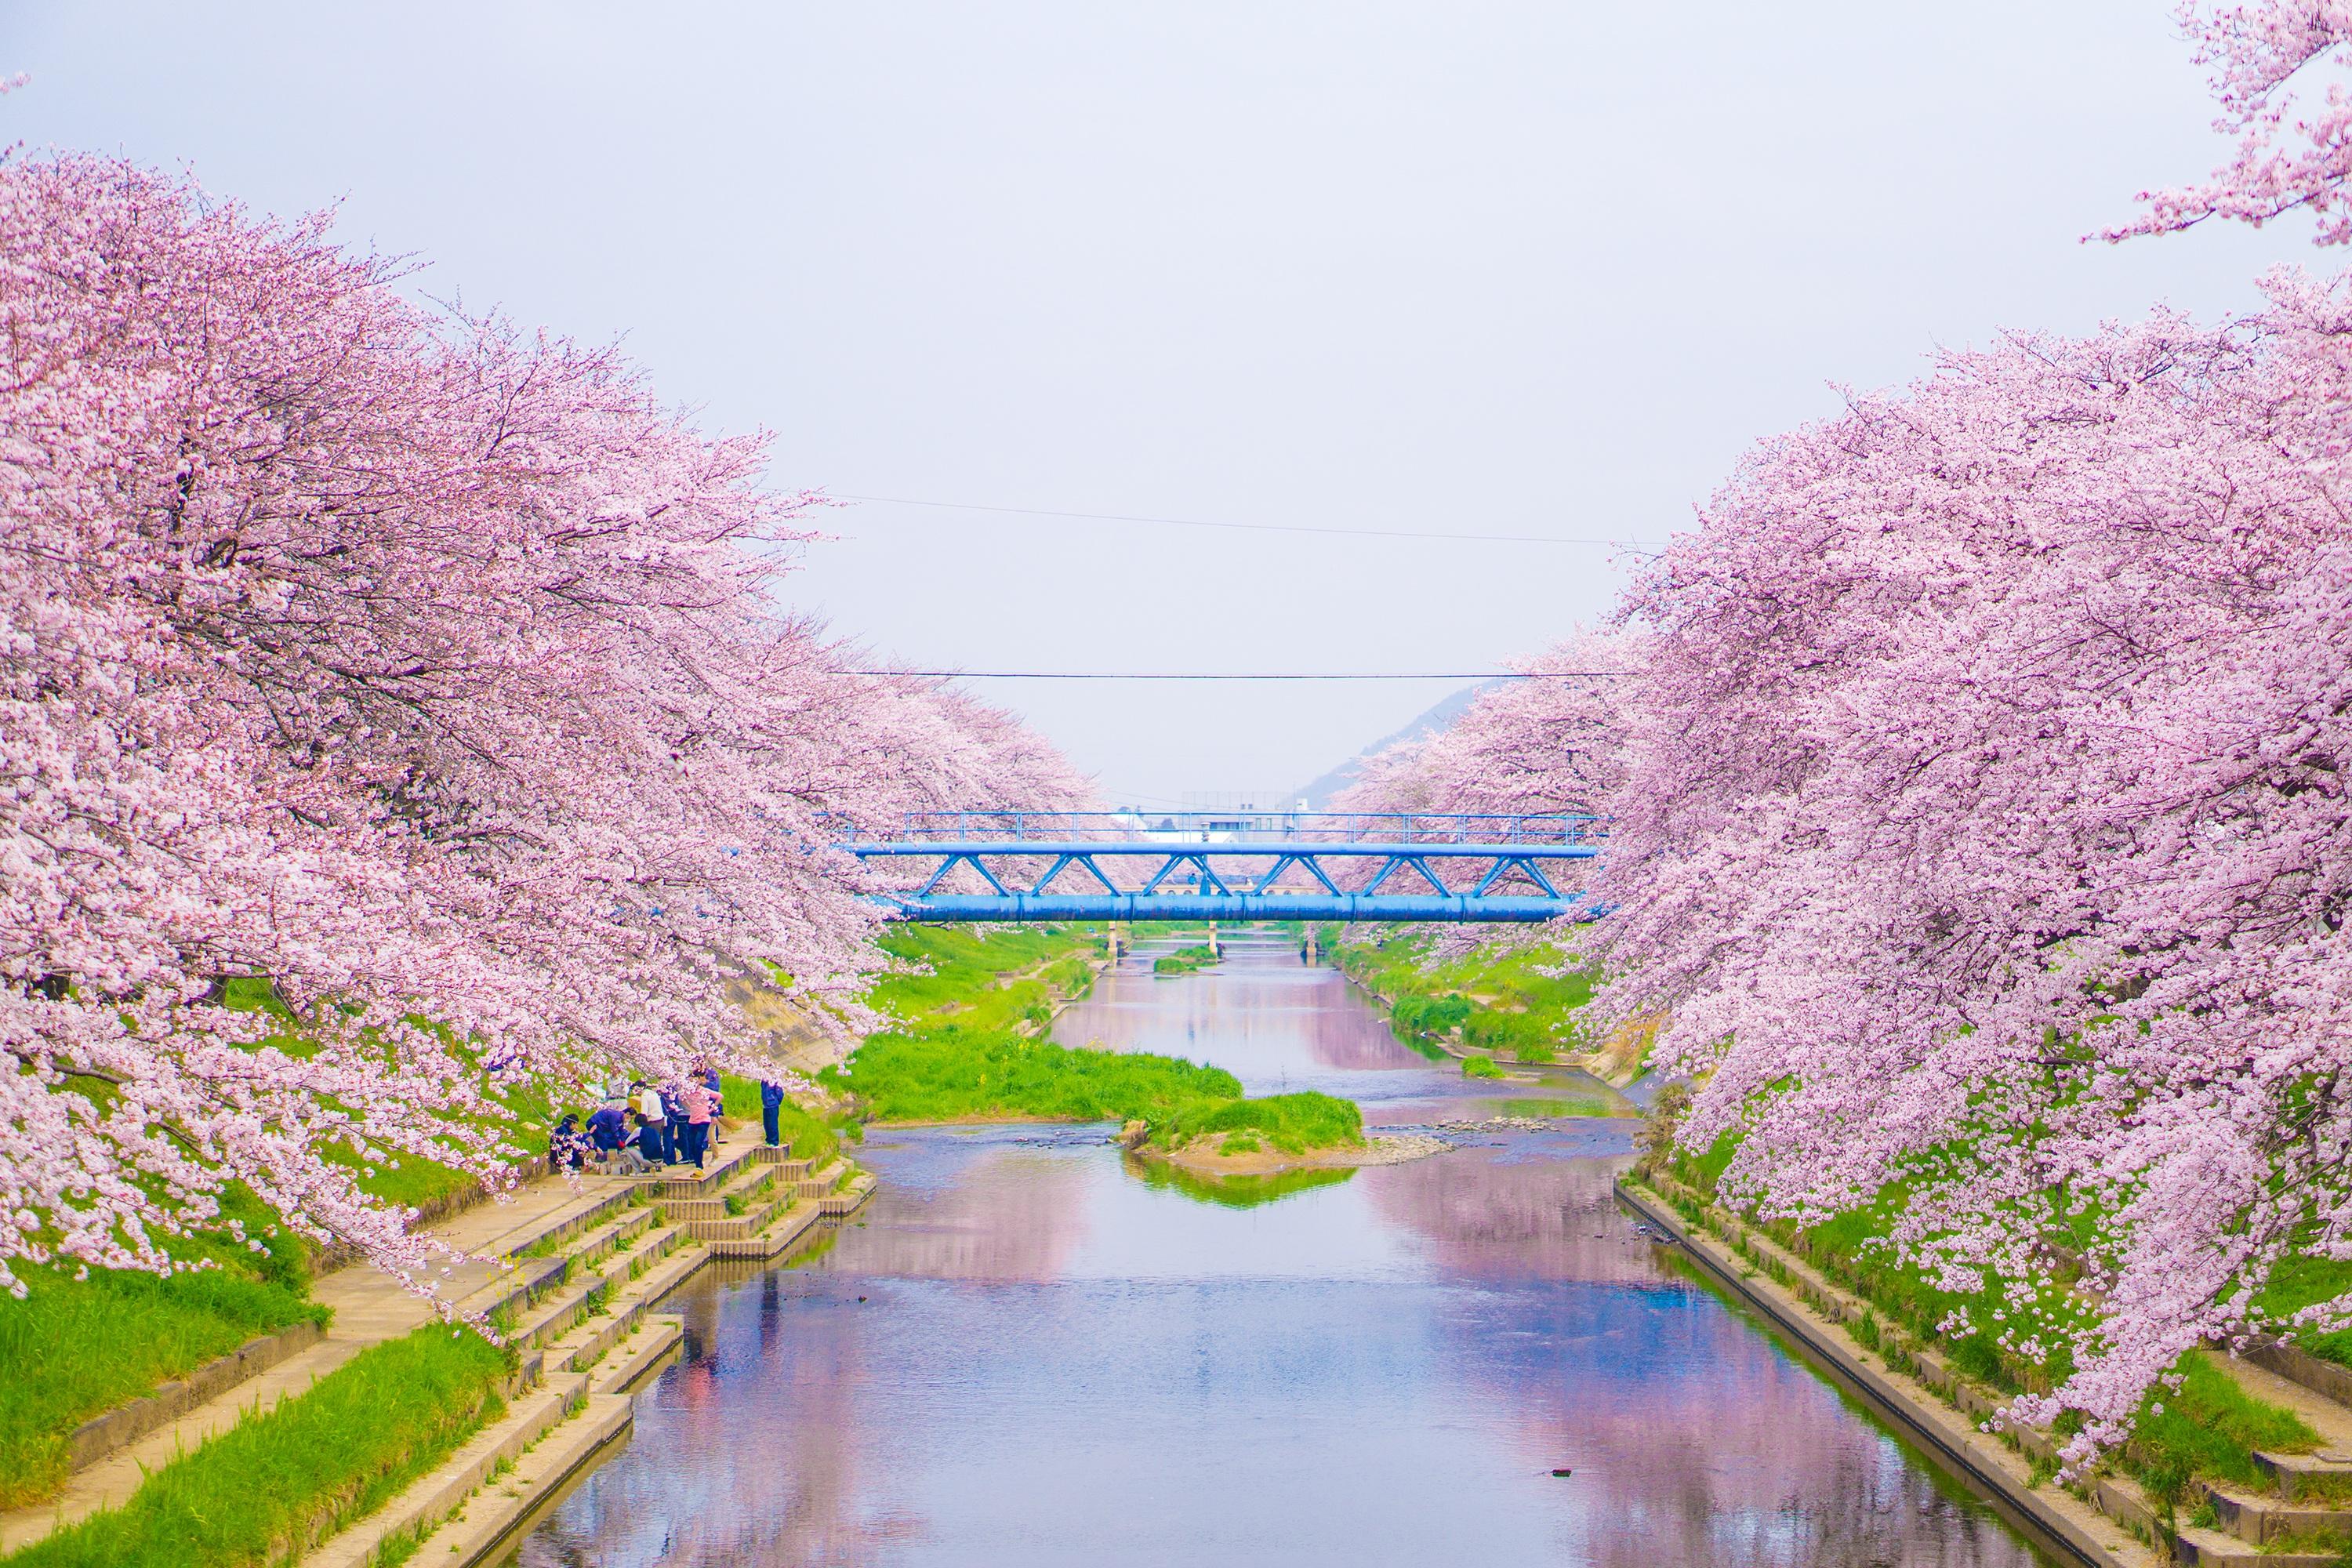 日本樱花照片_日本樱花节的照片_微信公众号文章